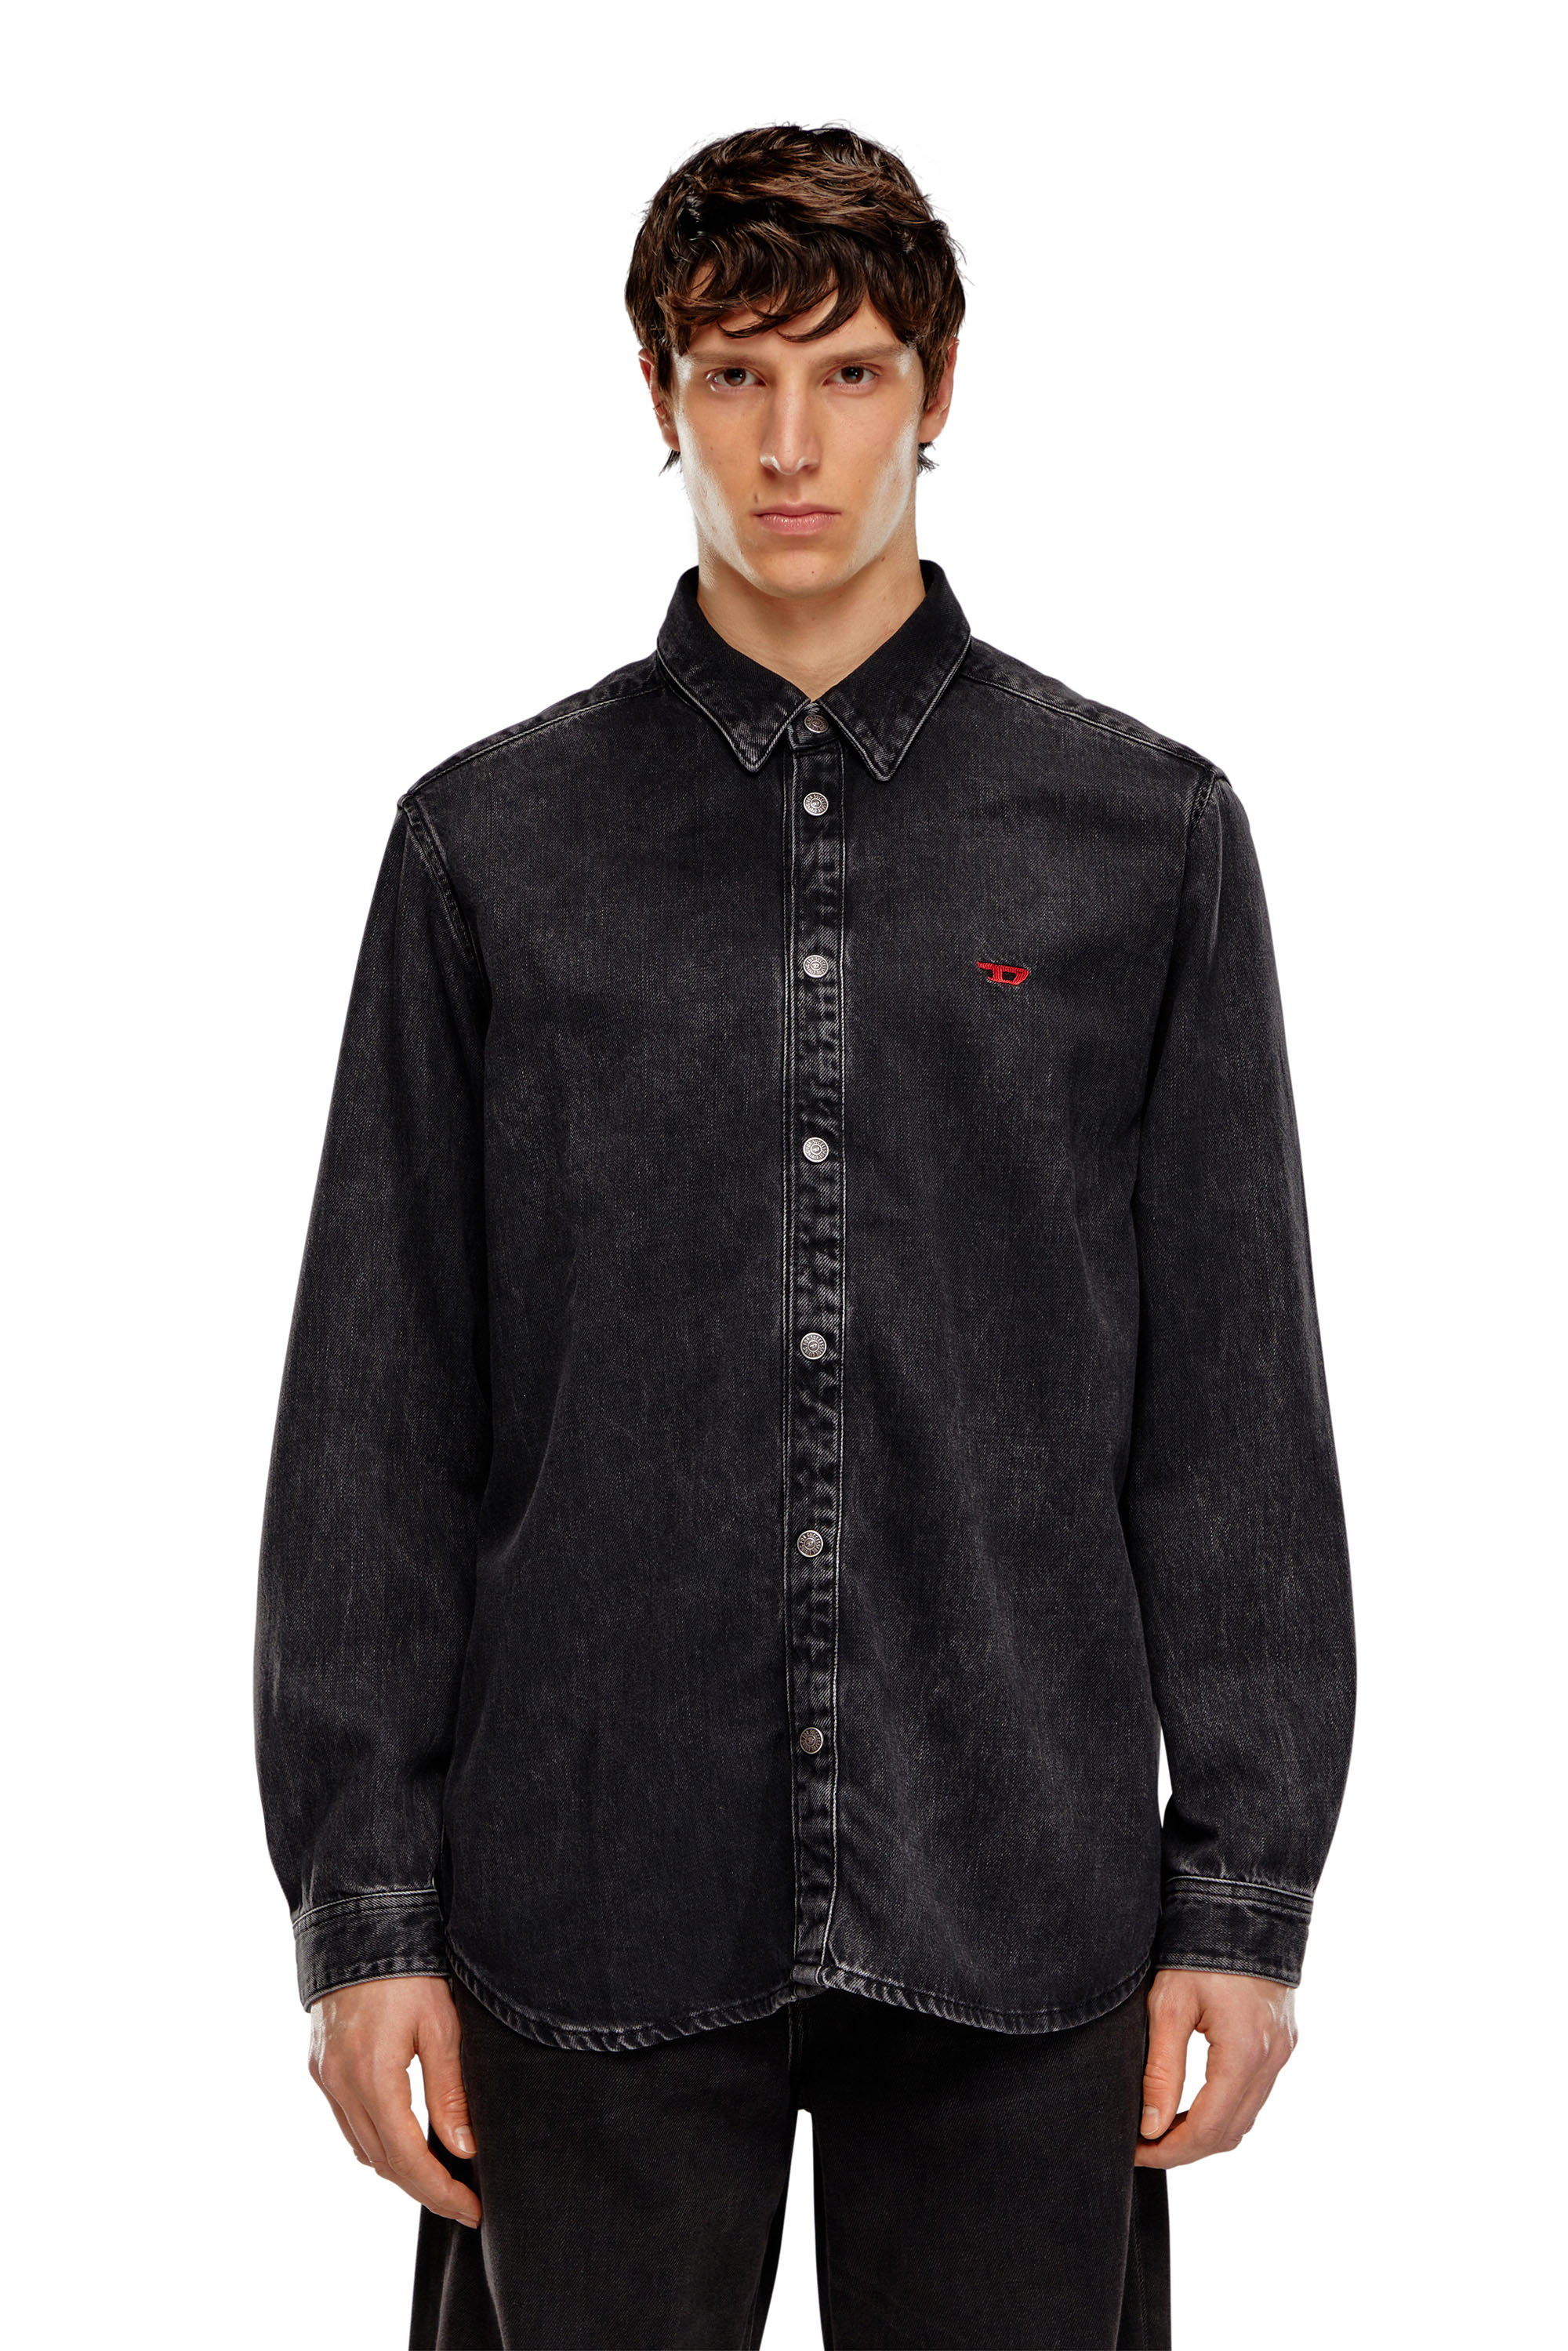 Diesel - D-SIMPLY, Male Shirt in Tencel denim in Black - Image 3